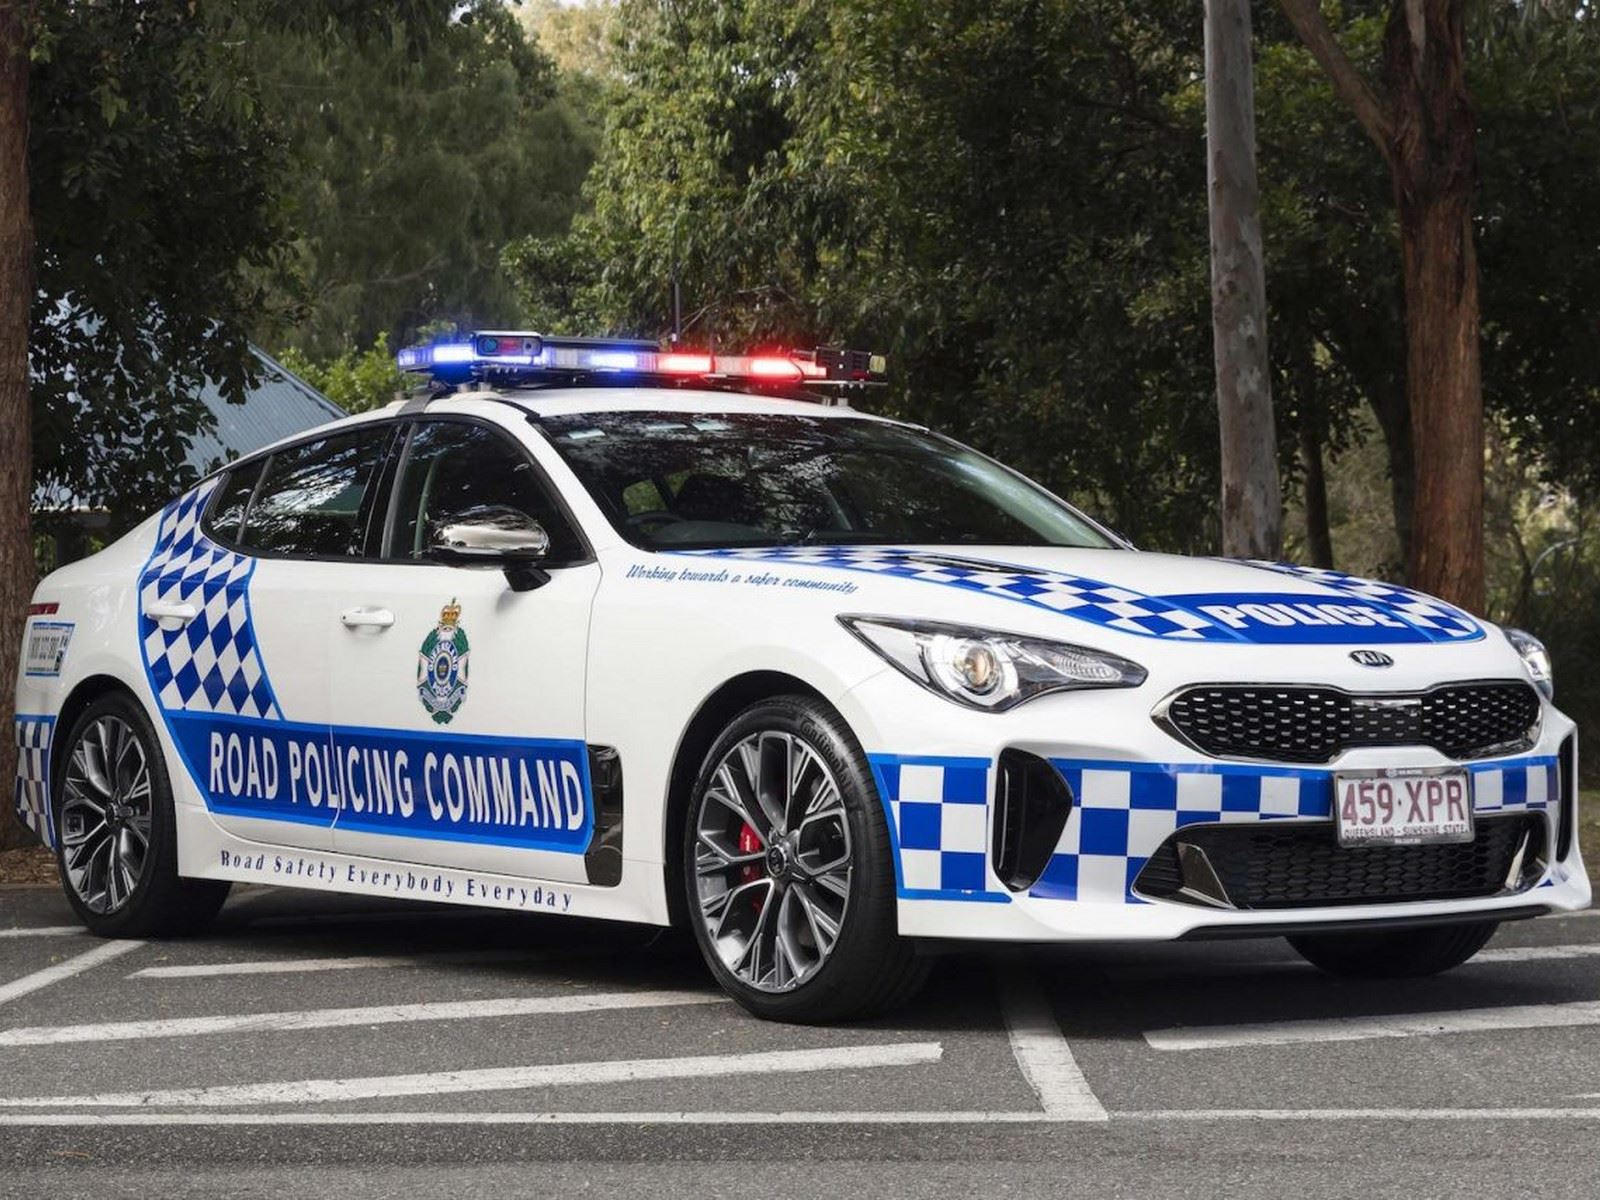 "بالصور" أكثر 10 سيارات شرطة تميزا حول العالم 50